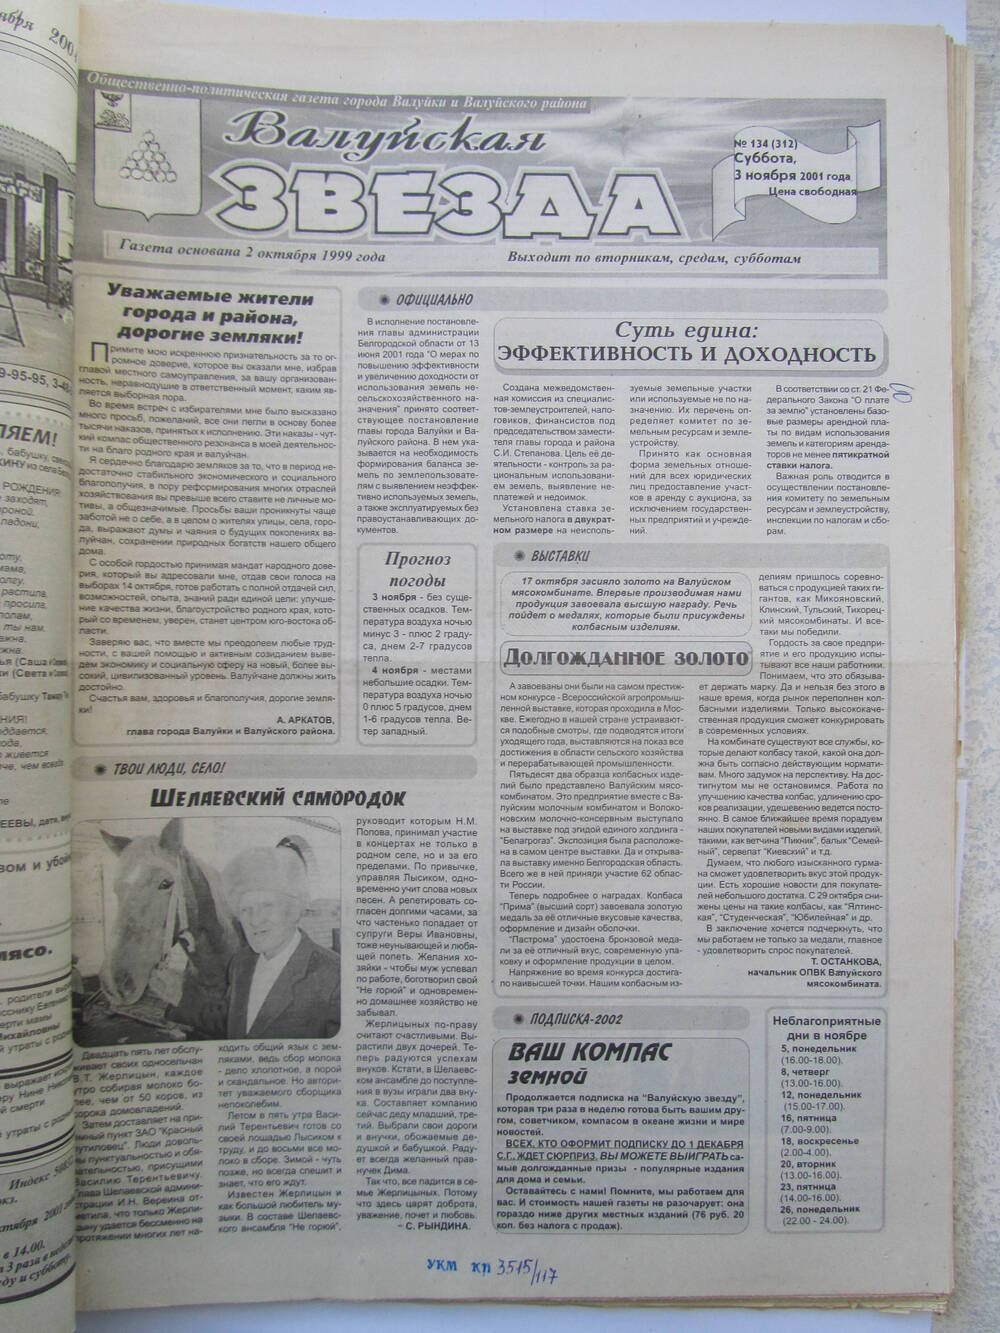 Газета Валуйская звезда №134 от 03.11.2001 г